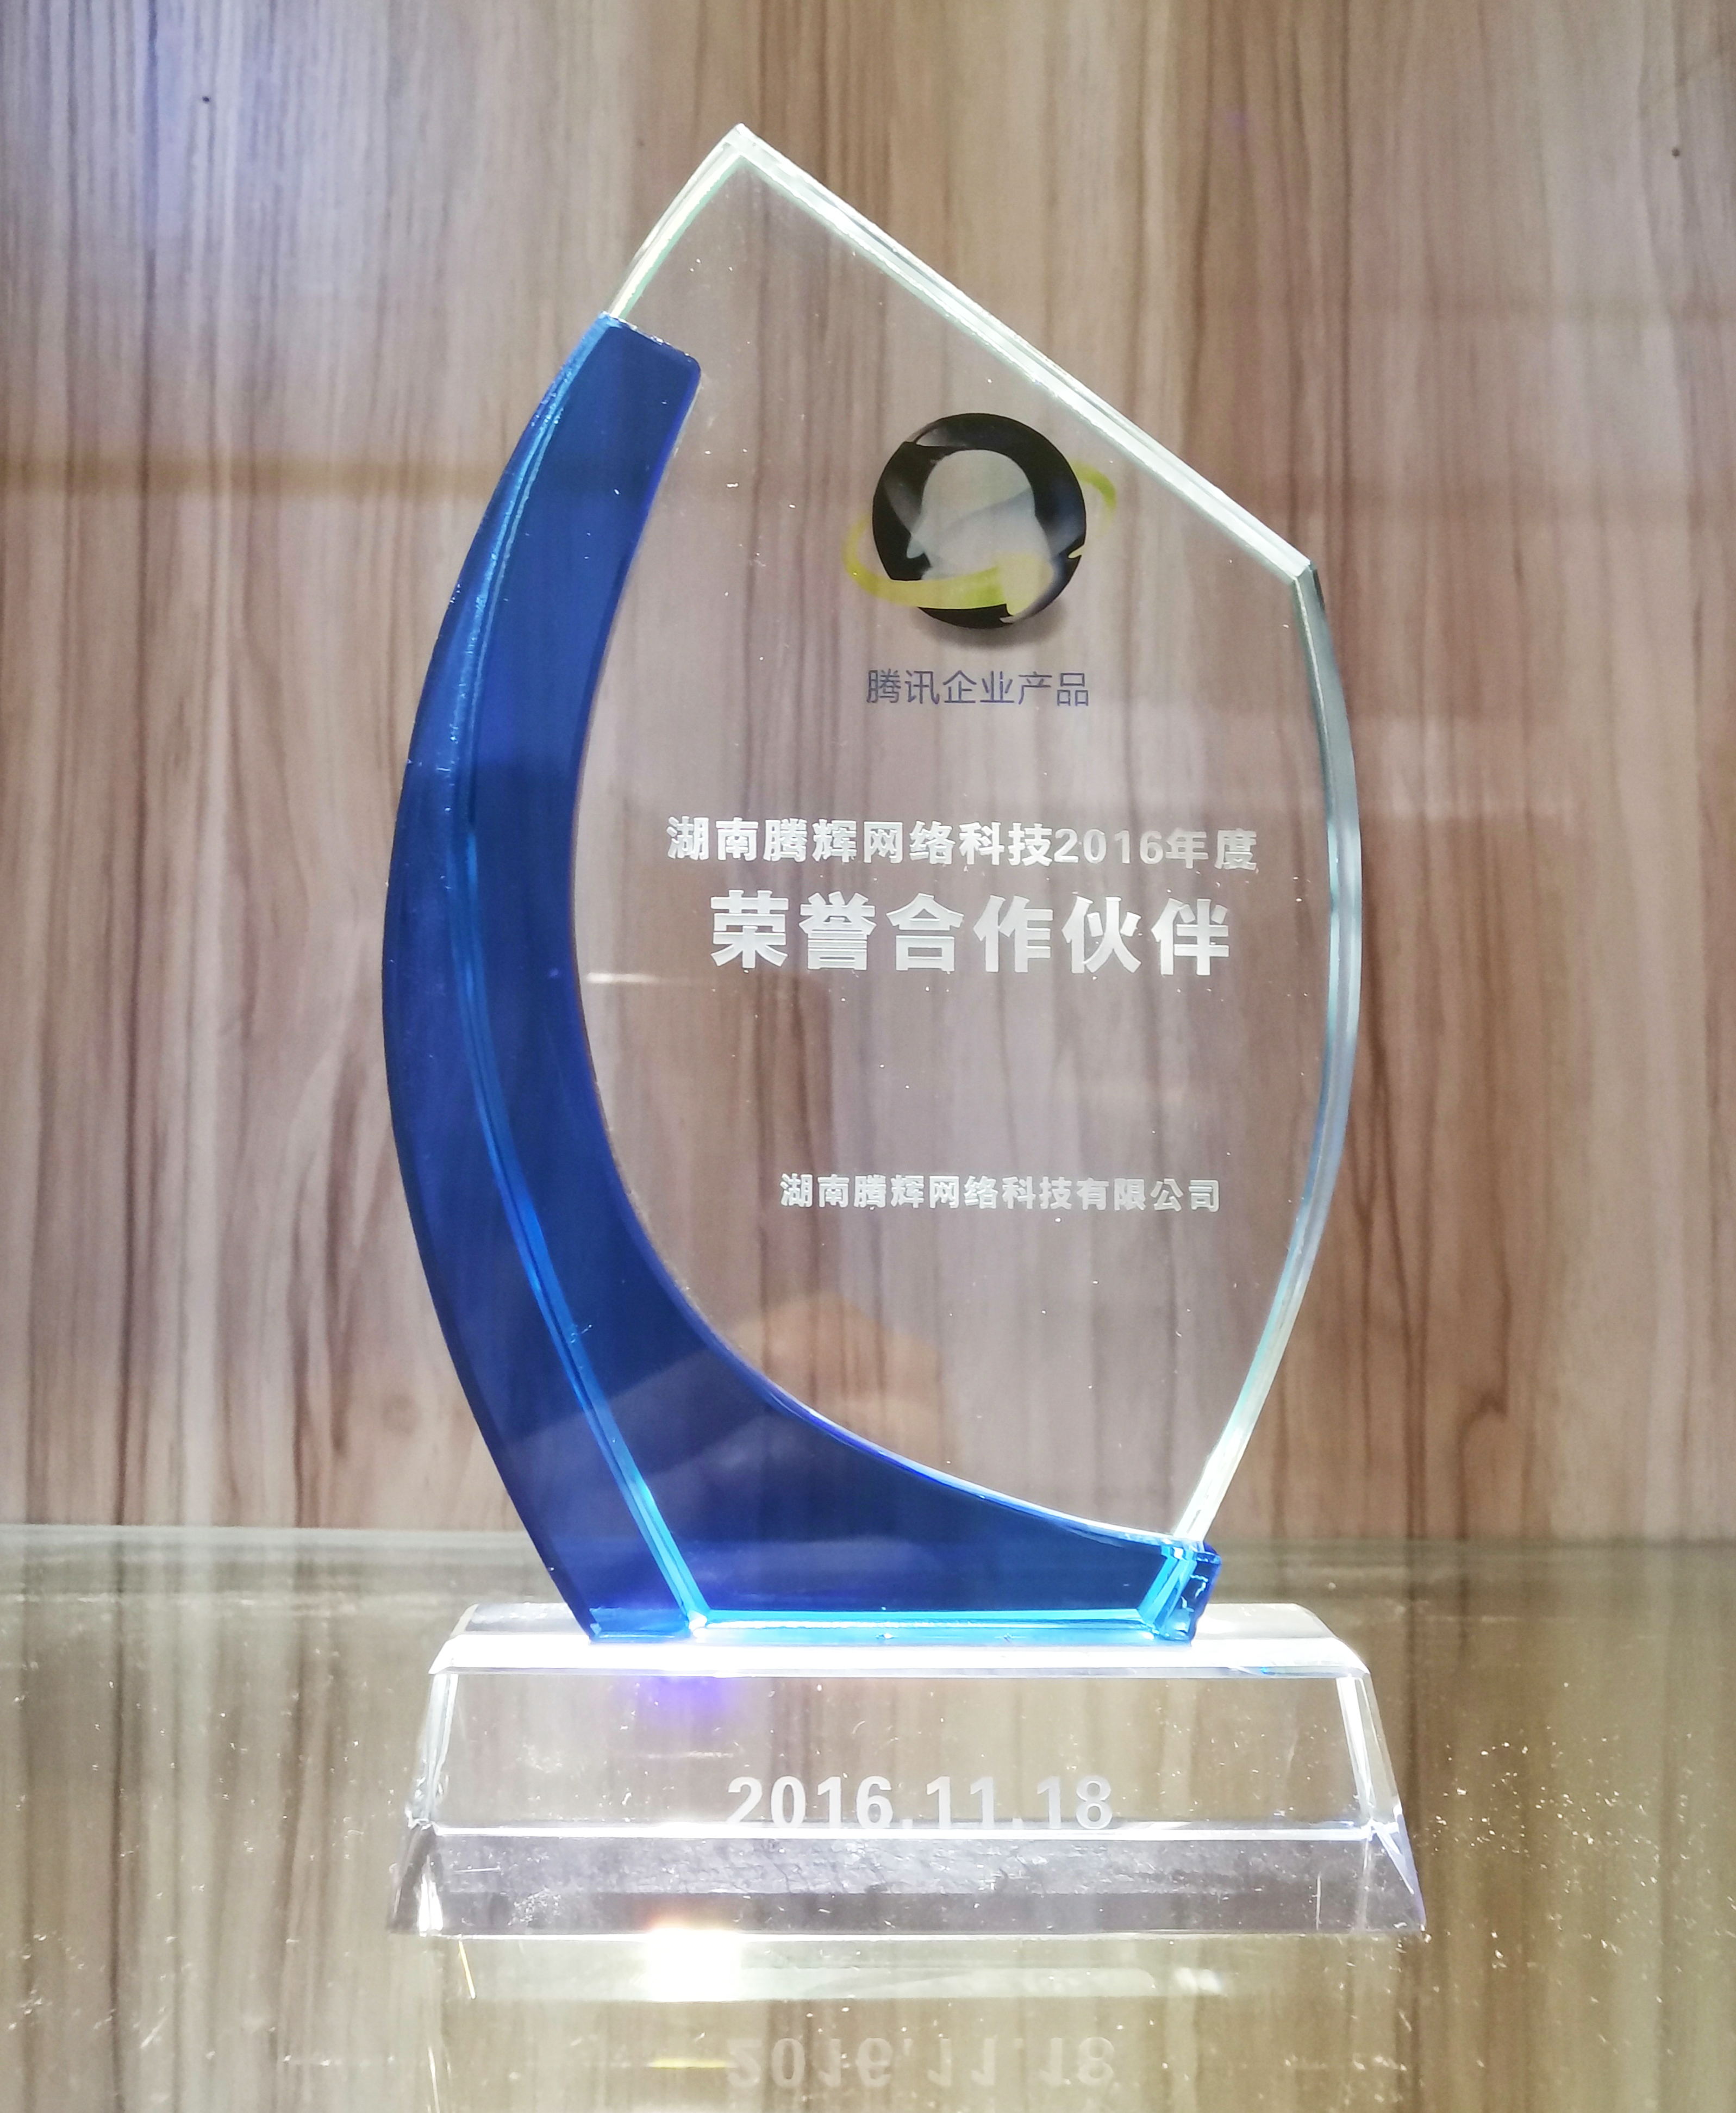 湖南腾辉网络科技2016年度荣誉合作伙伴